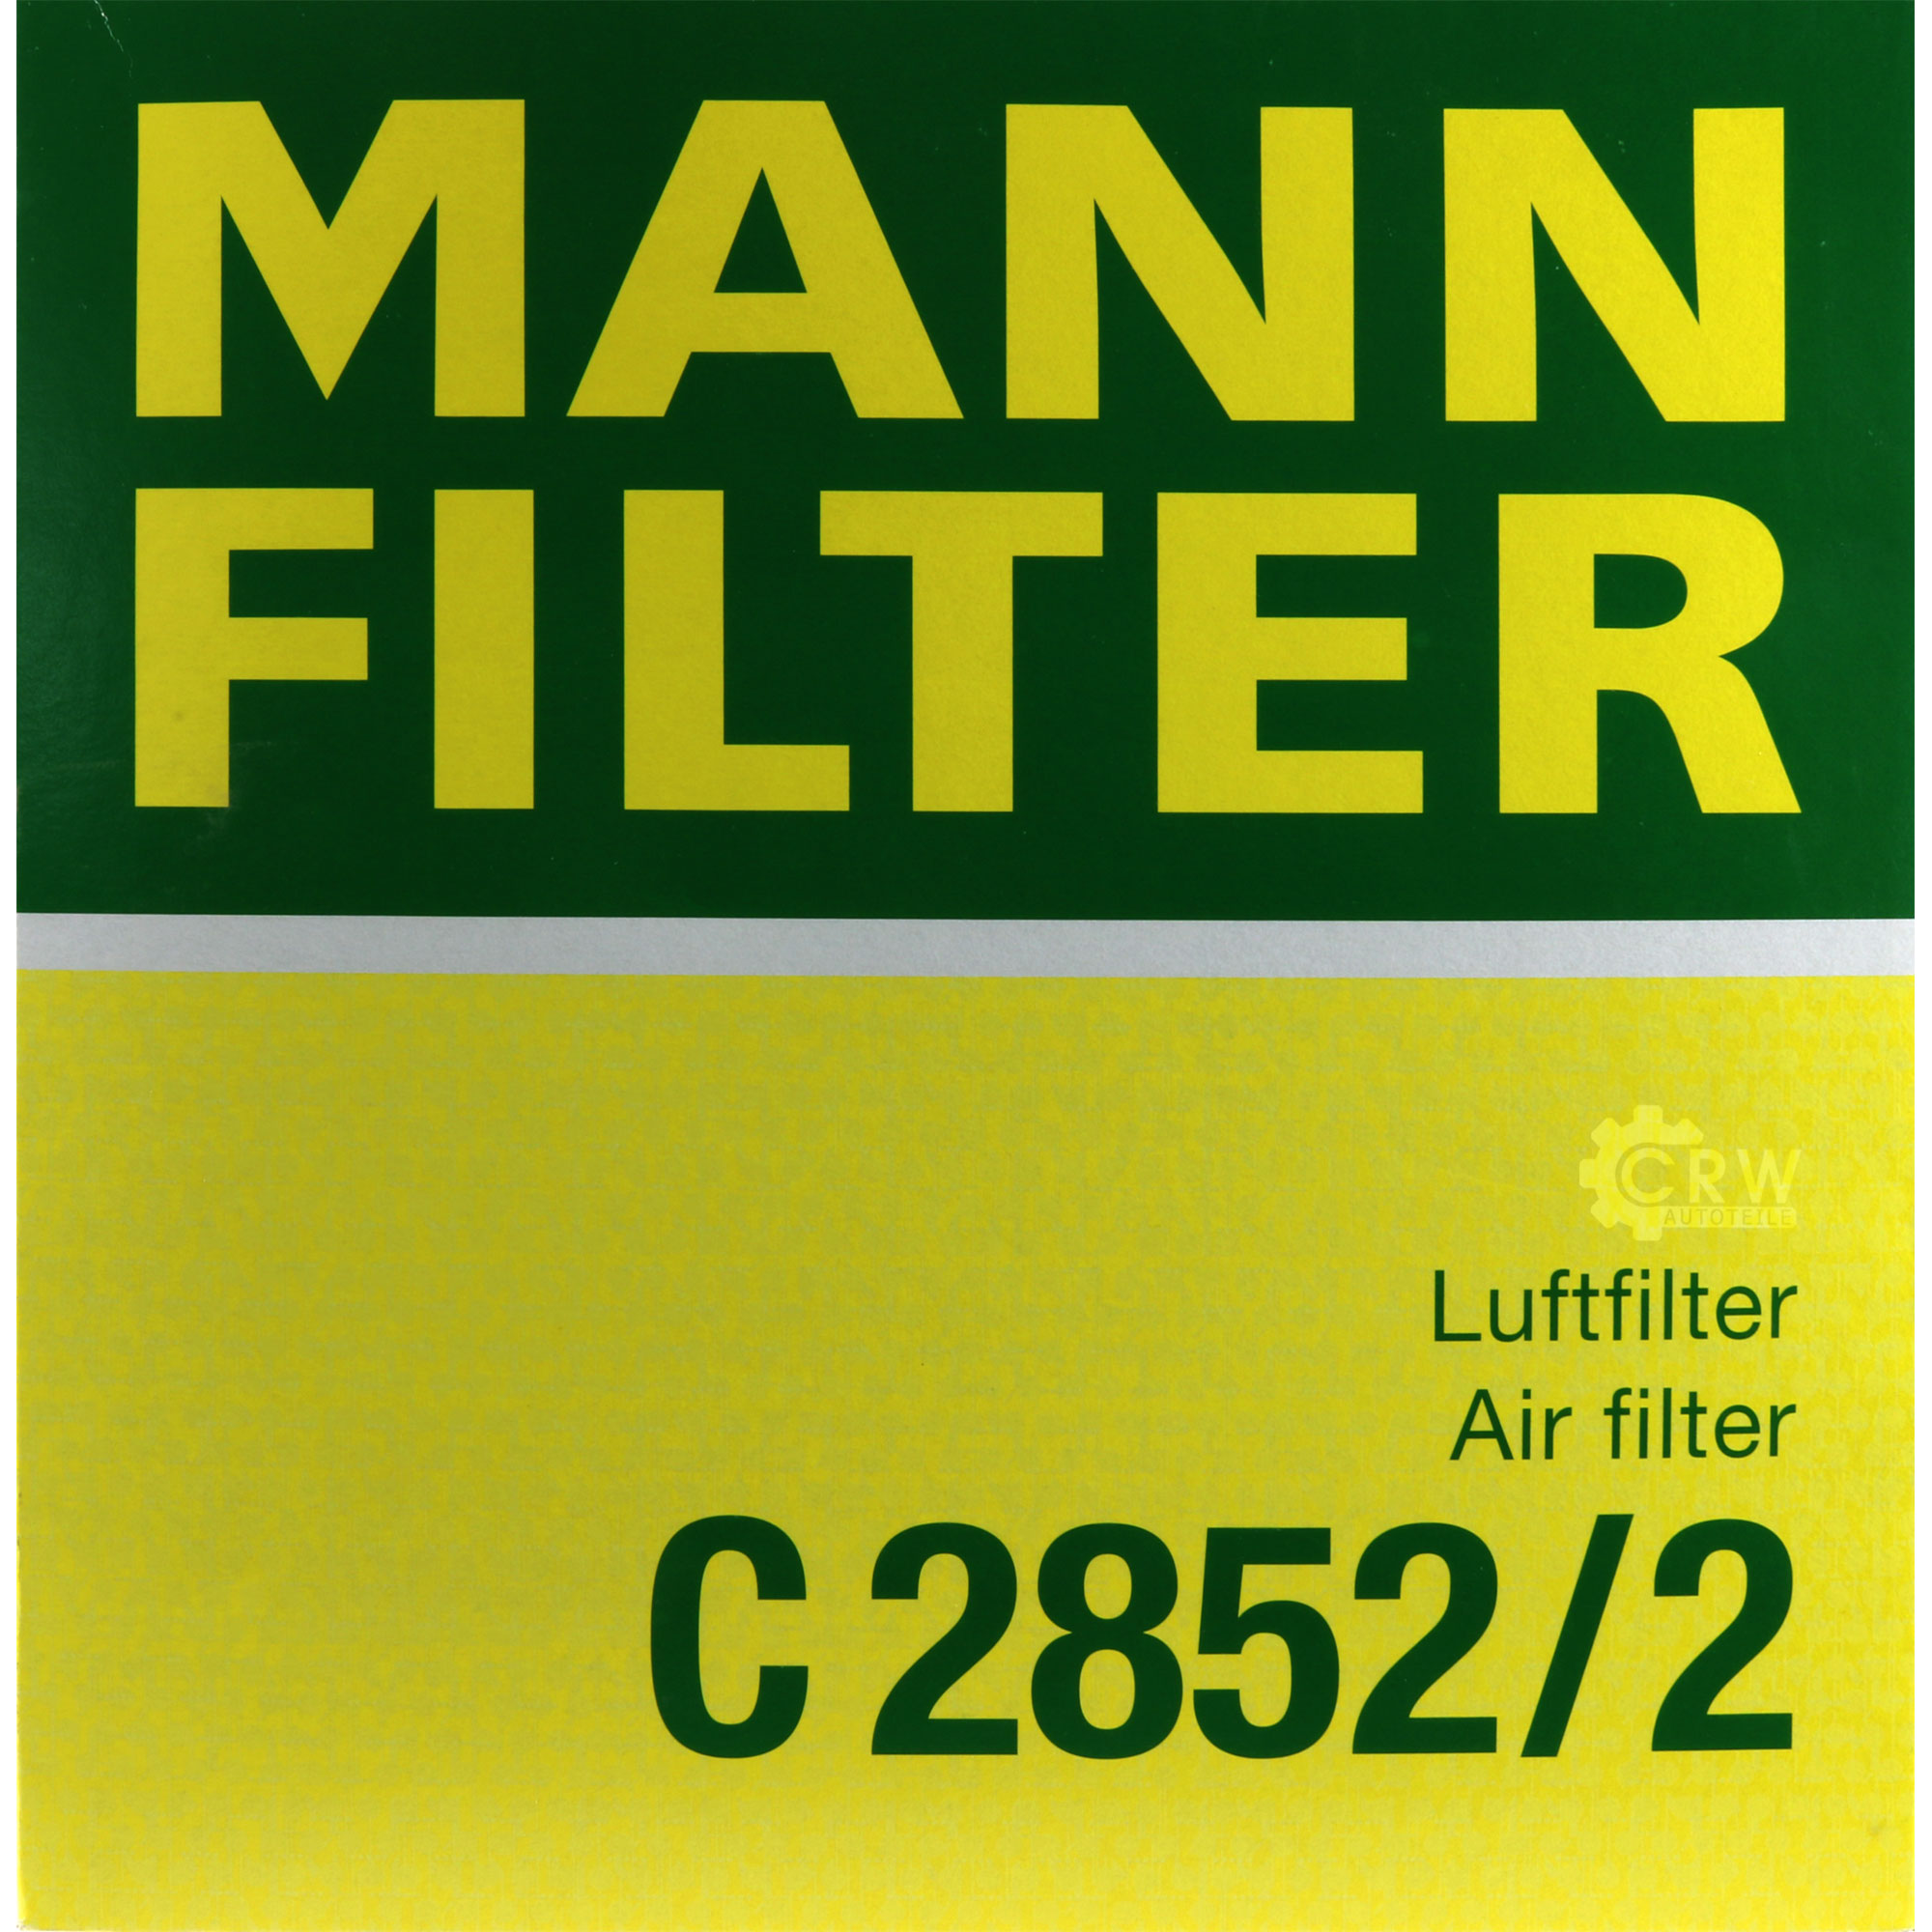 MANN-FILTER Luftfilter für VW Golf III 1H1 1.4 19E 1G1 1.3 86C 80 1.0 Cat